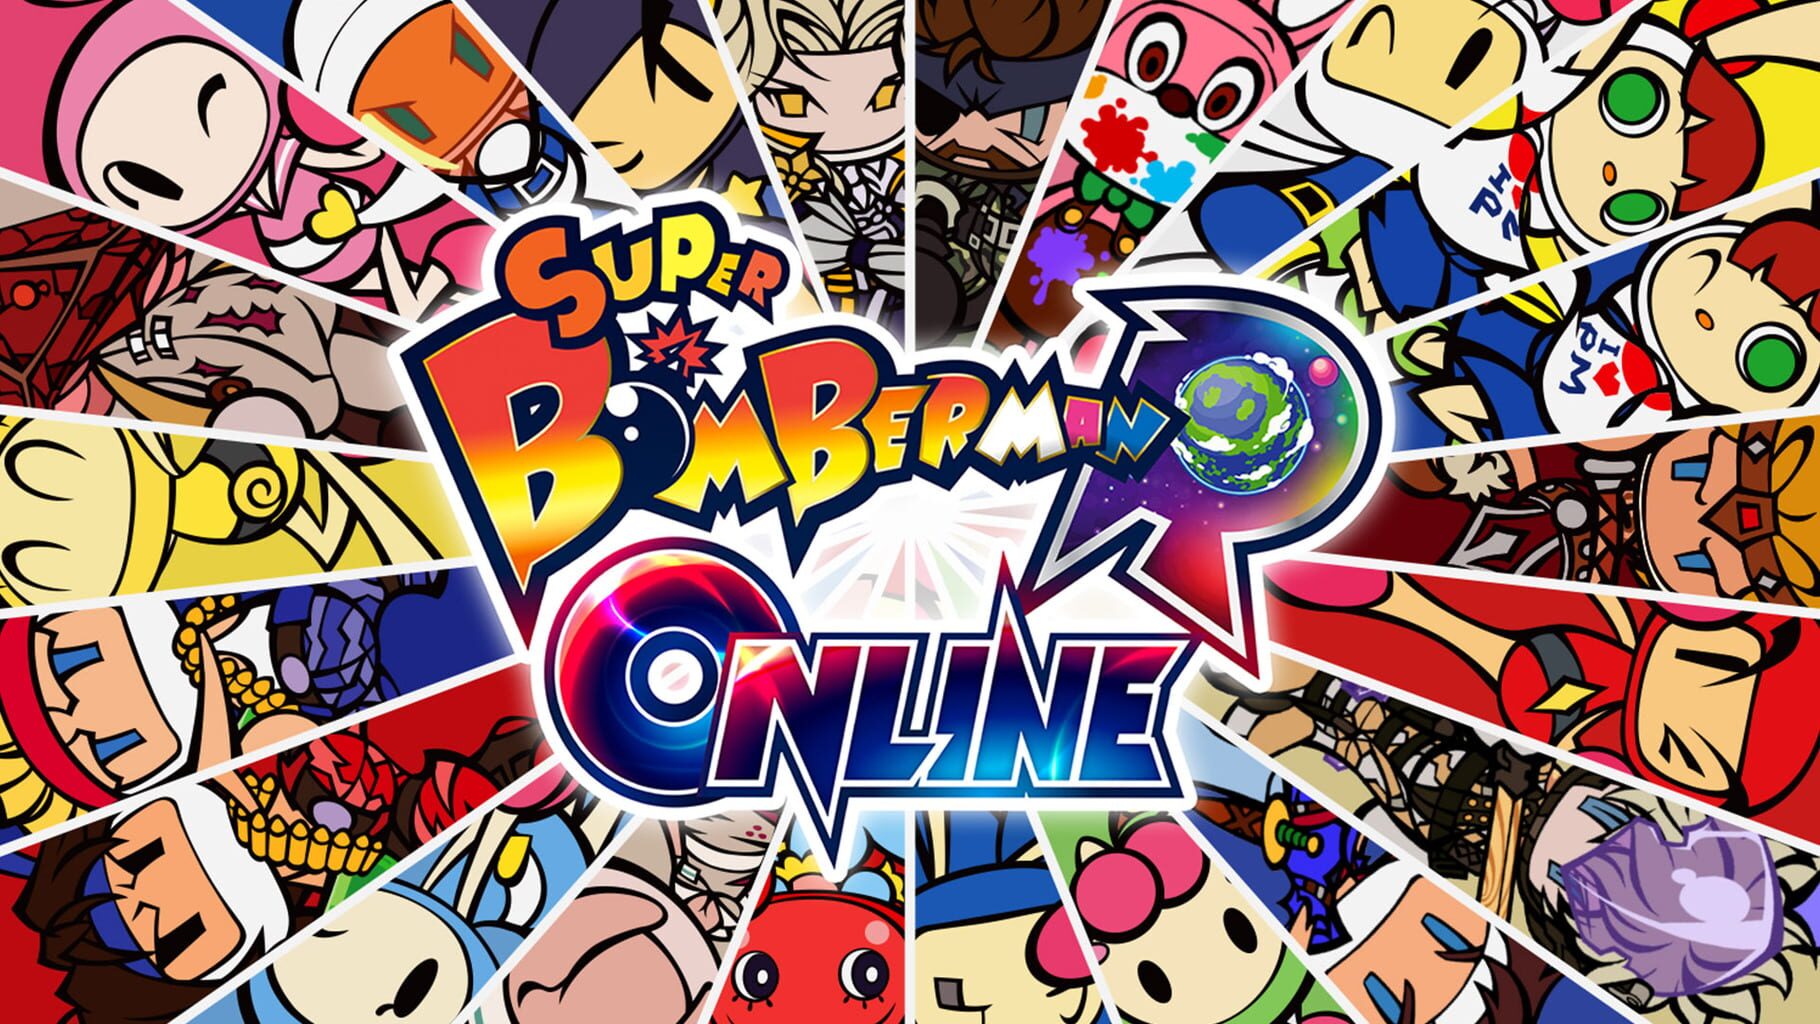 Super Bomberman R Online artwork